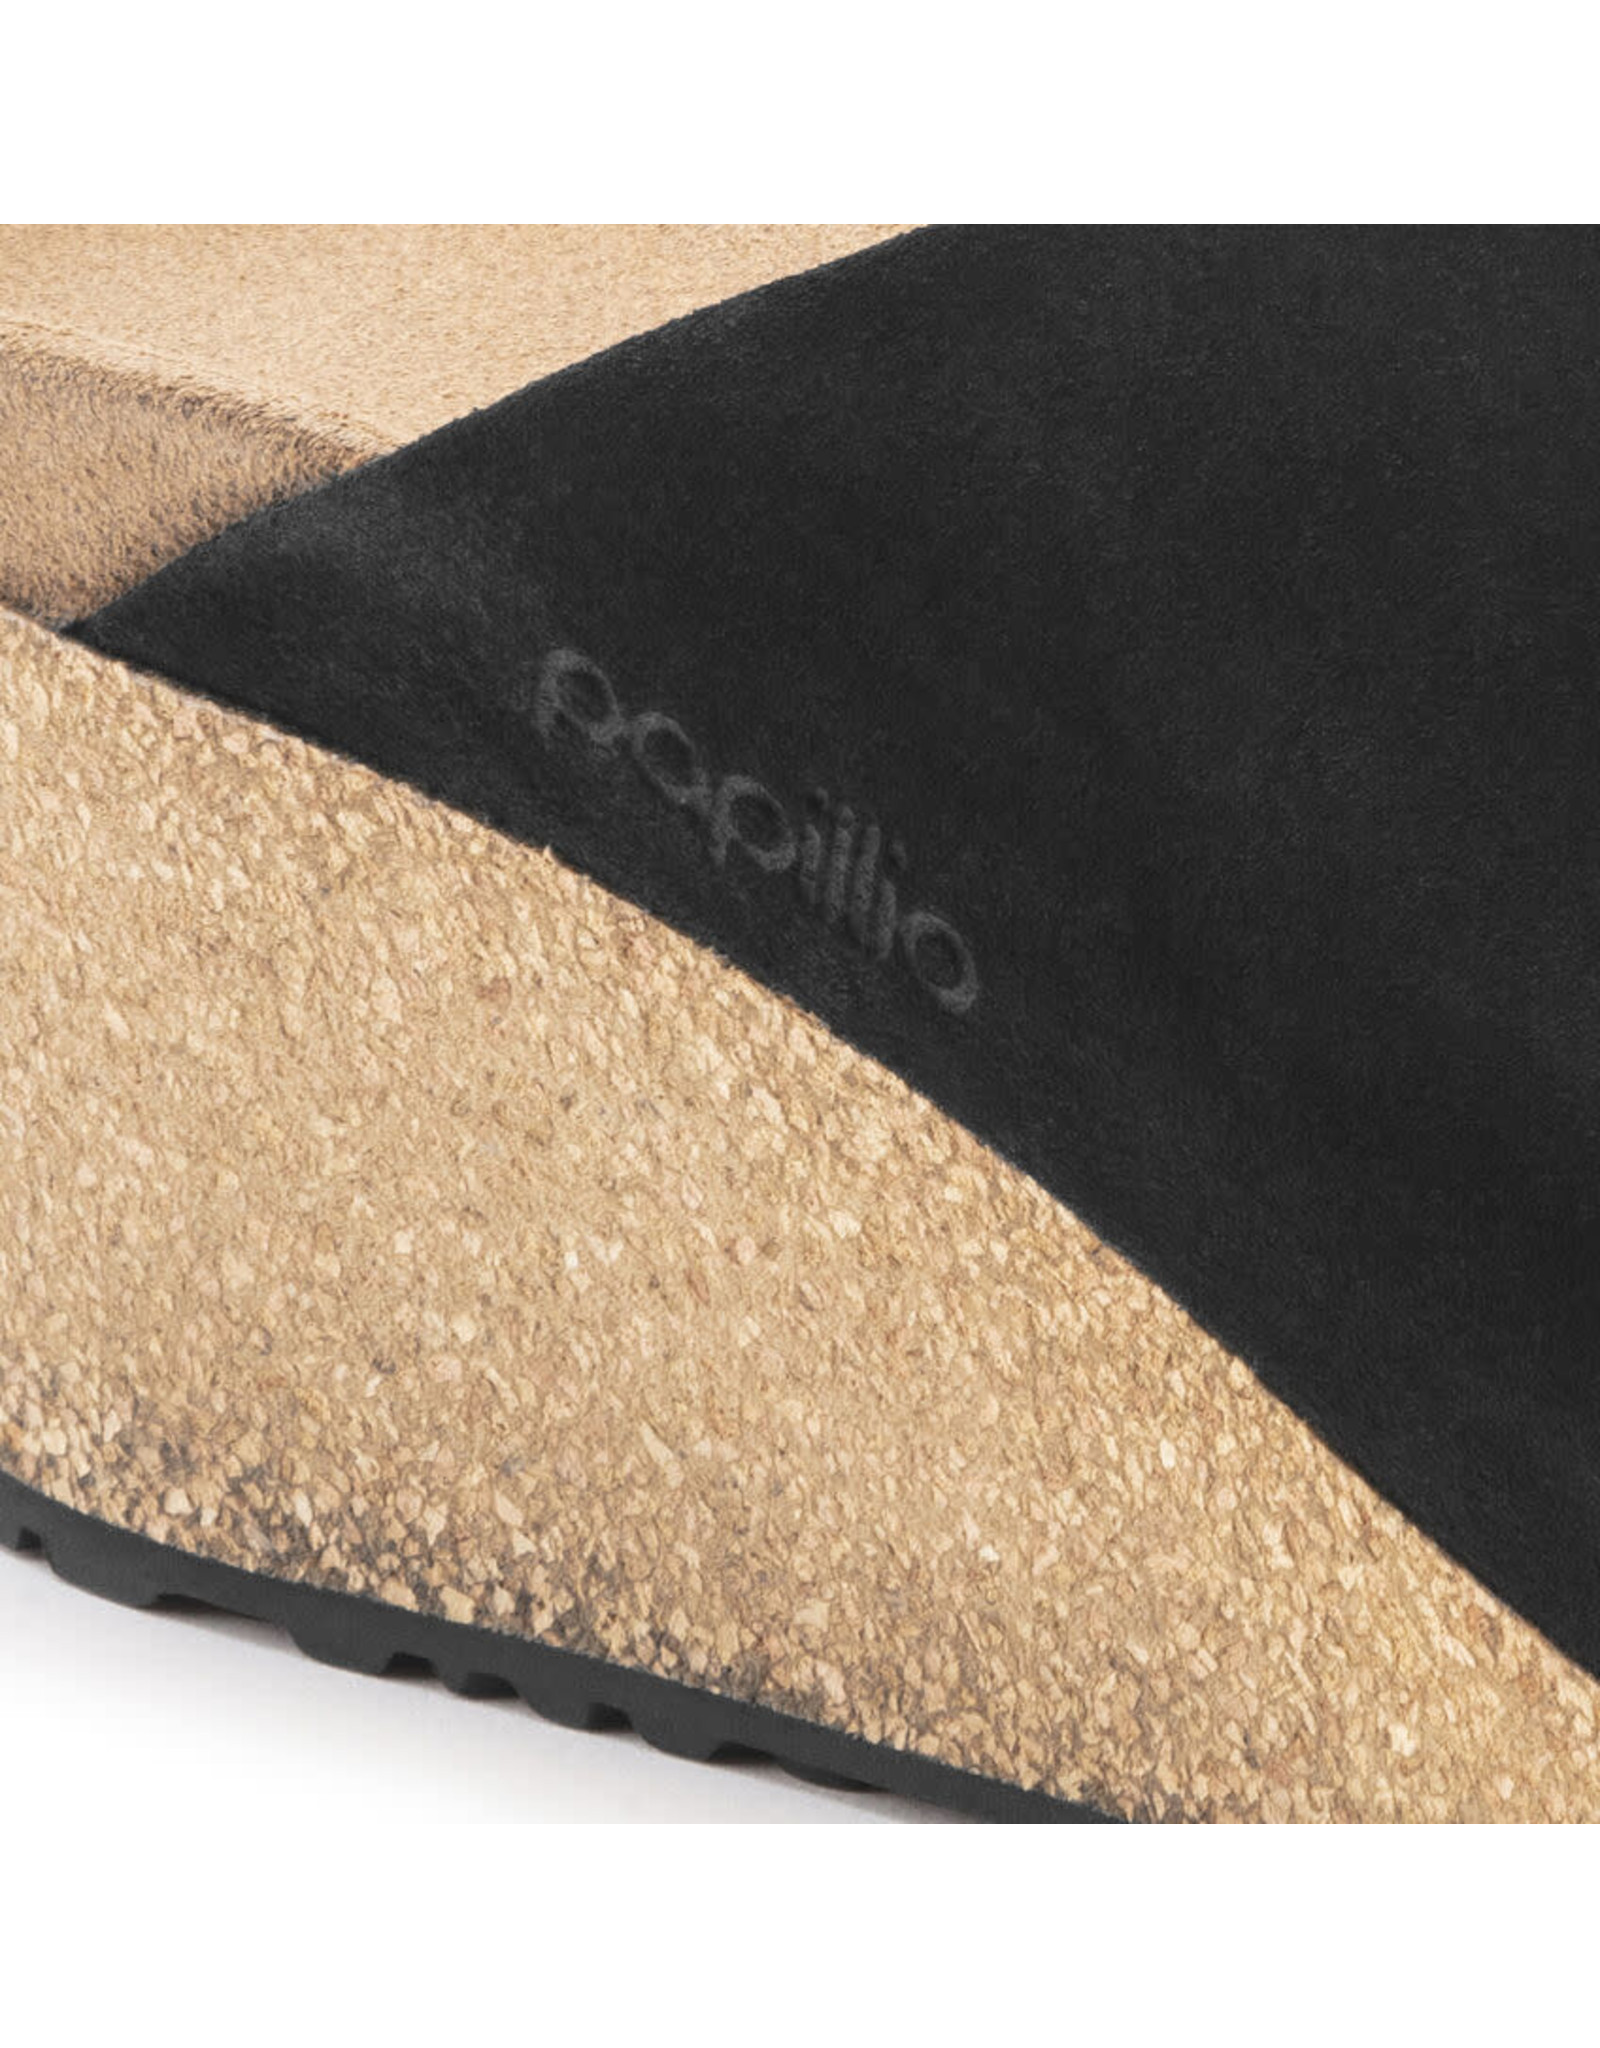 Birkenstock Namica Suede Leather Wedge Sandal